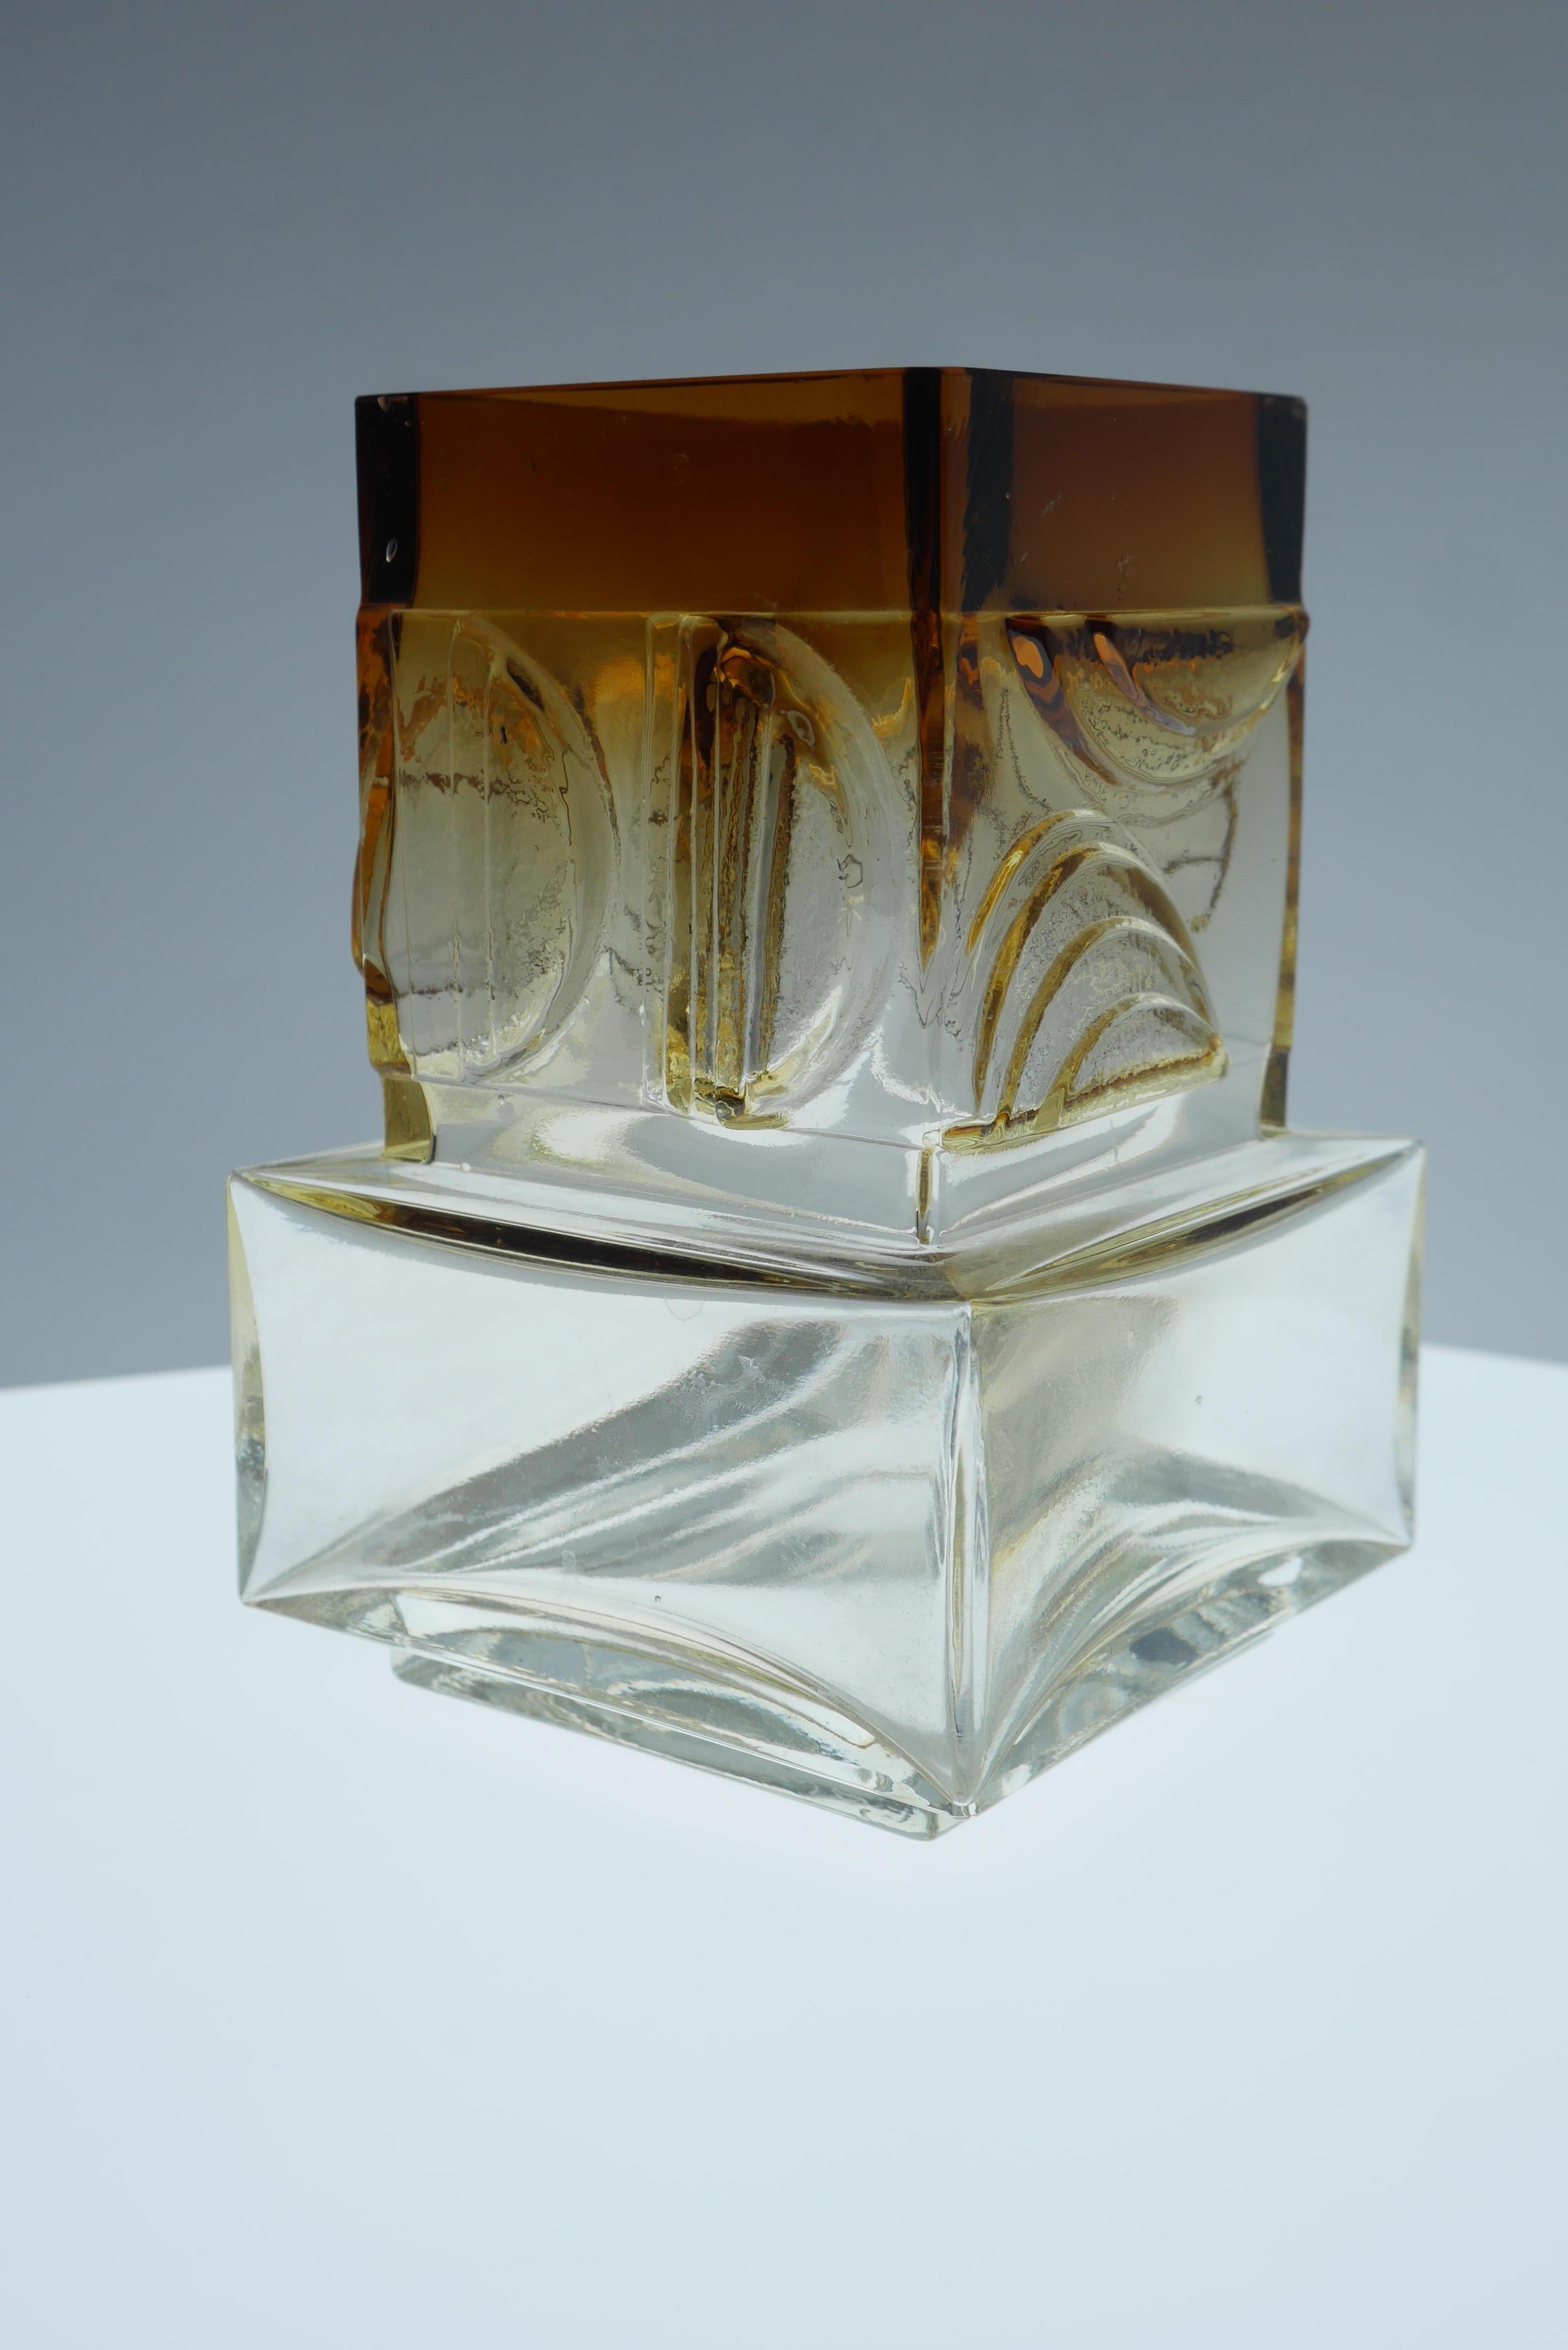 Ein typisch scharfes finnisches Design aus den 1960er Jahren von Pentti Sarpaneva, Oy Kumela Glaswerke für Torun Hopea. Das Glas ist in einem tiefen Sepiaton gefärbt, der beim Herabsteigen in der Vase verblasst. Unterschrieben. Diese Vase vermittelt